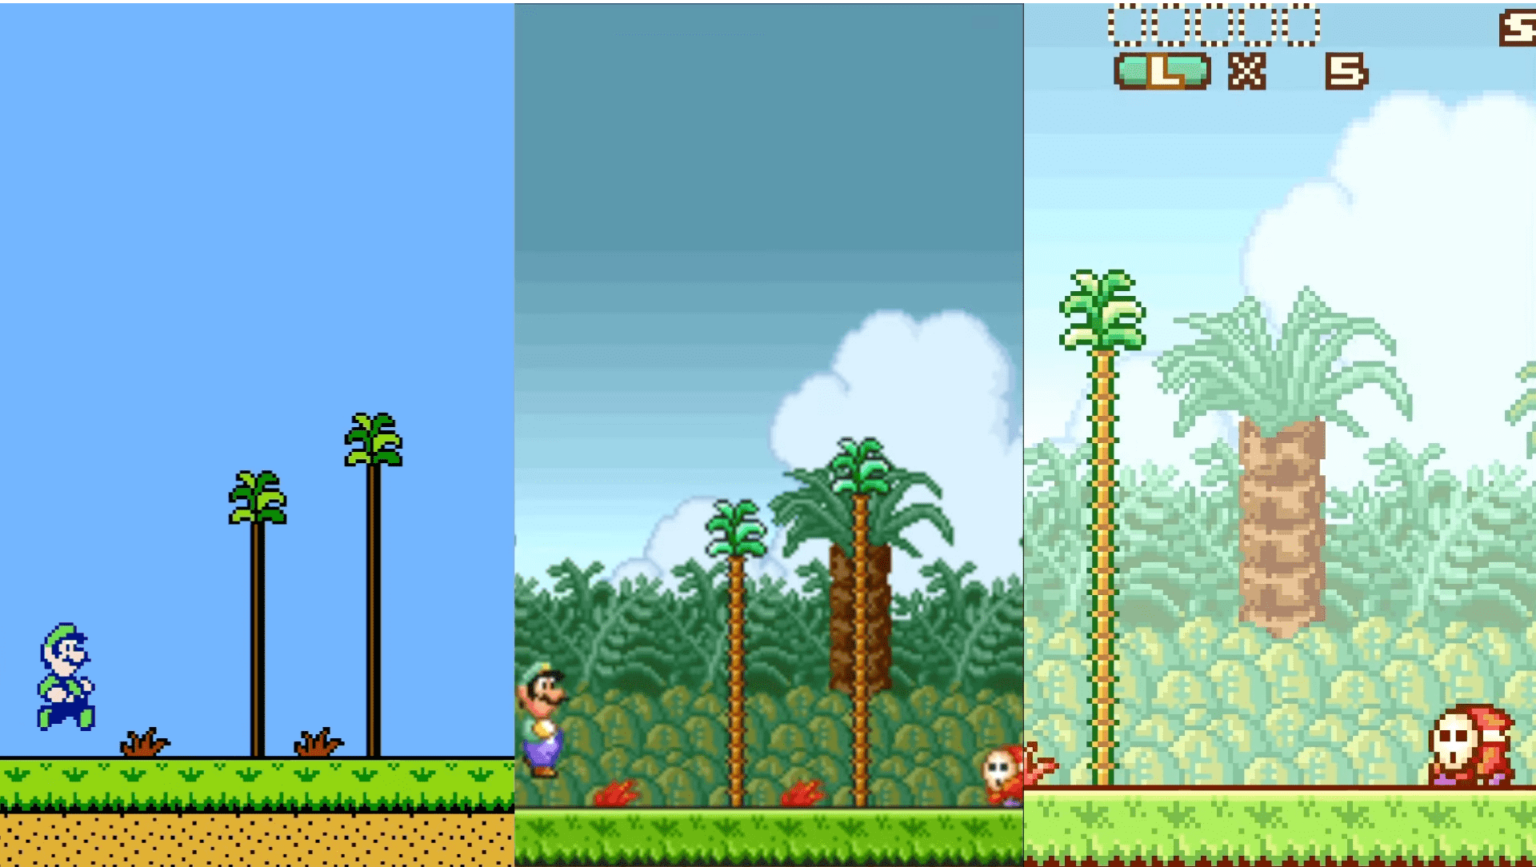 Comparing Super Mario Bros. 2 on NES vs SNES vs GBA